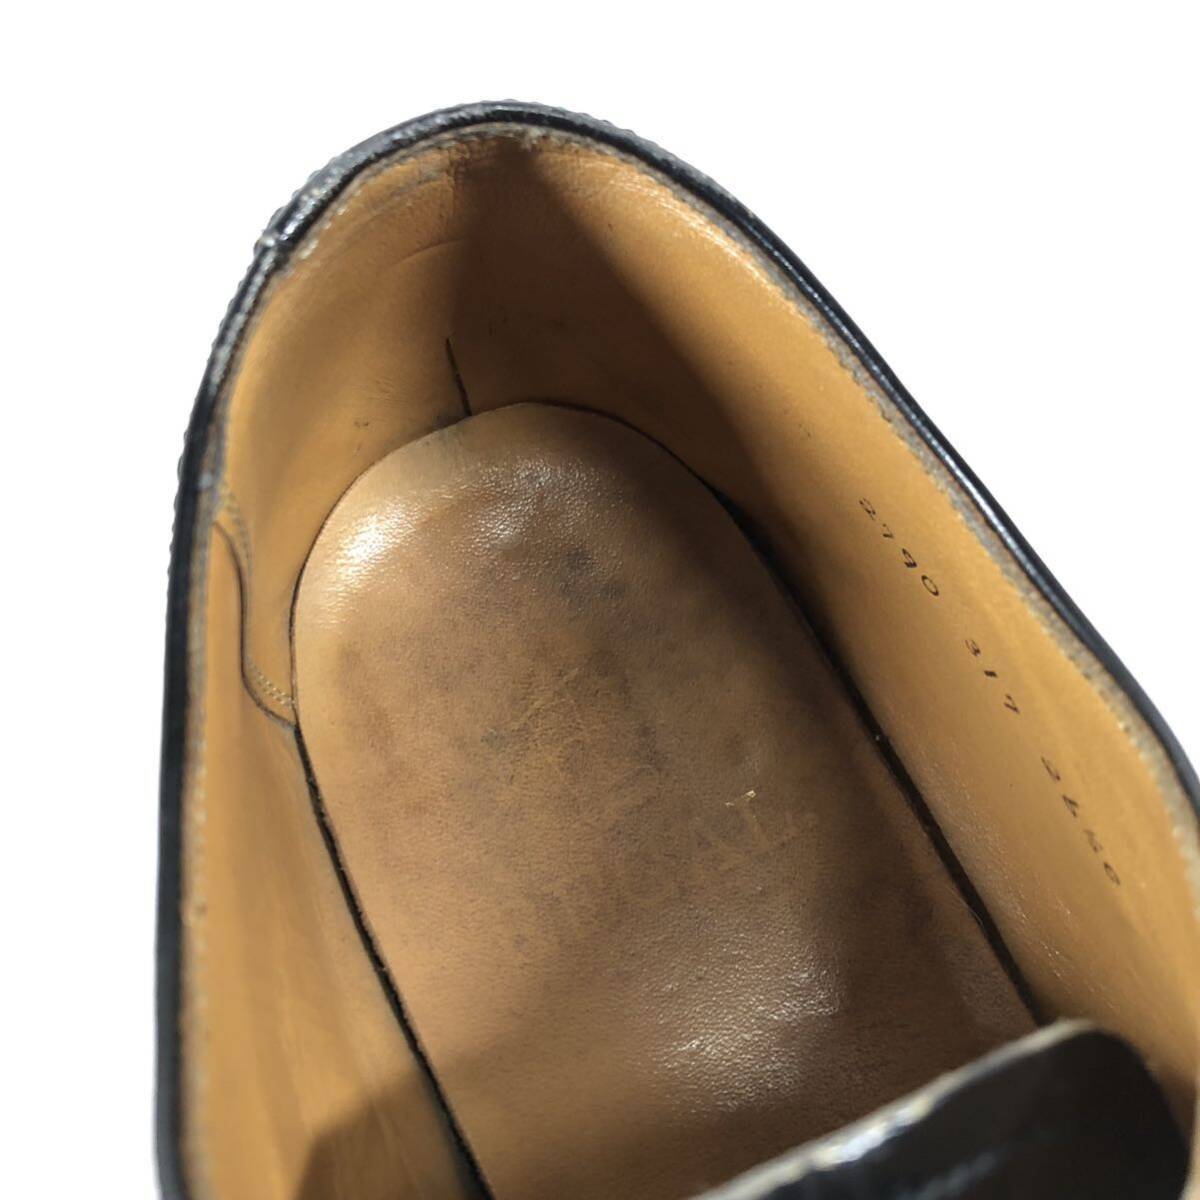 【リーガル】本物 REGAL 靴 26.5cm 黒 ストレートチップ ビジネスシューズ 外羽根式 本革 レザー 男性用 メンズ 26 1/2 EE_画像9